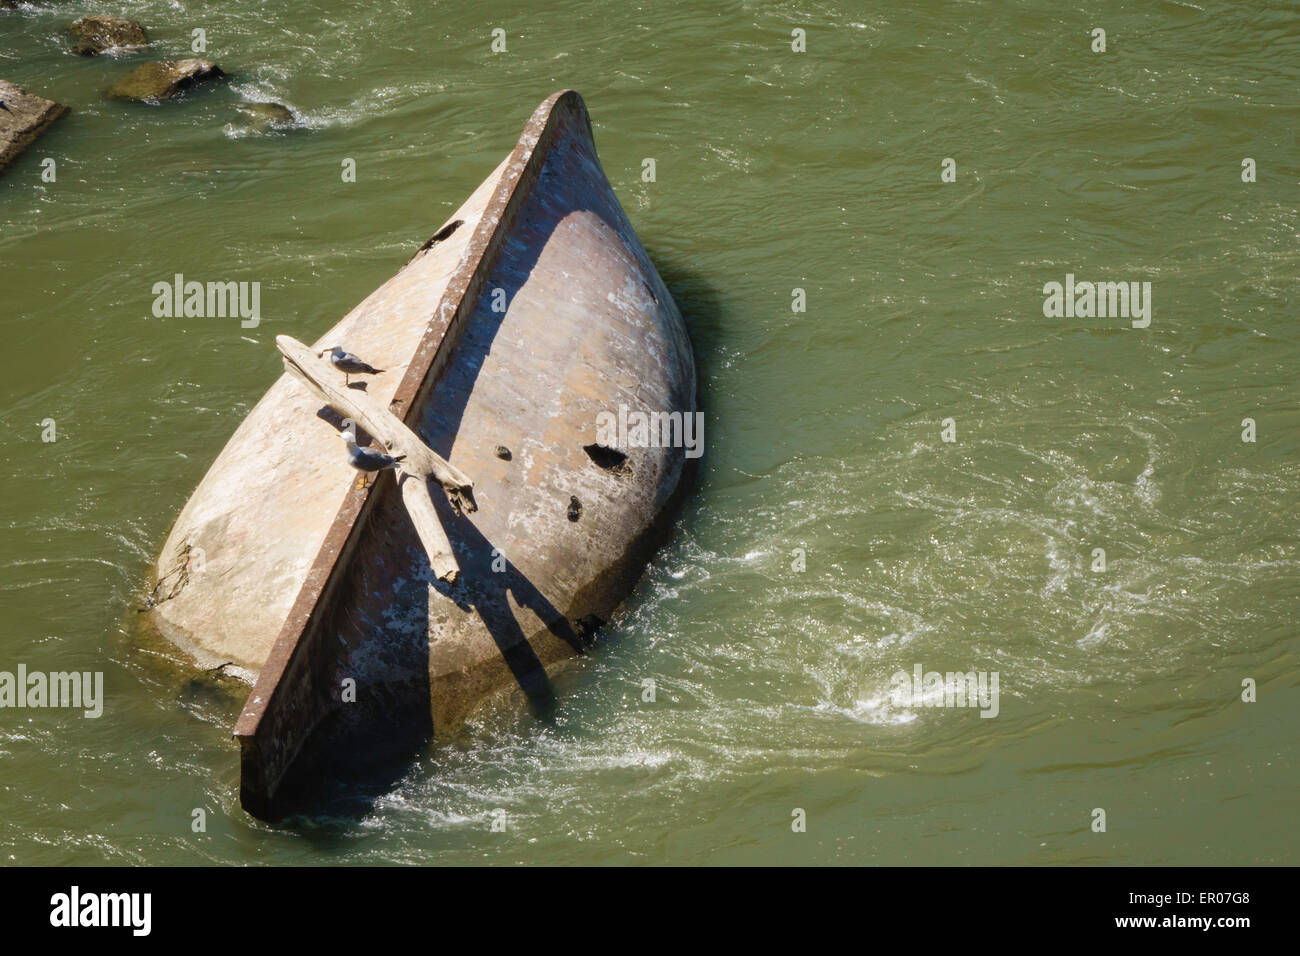 sunken boat in river Stock Photo